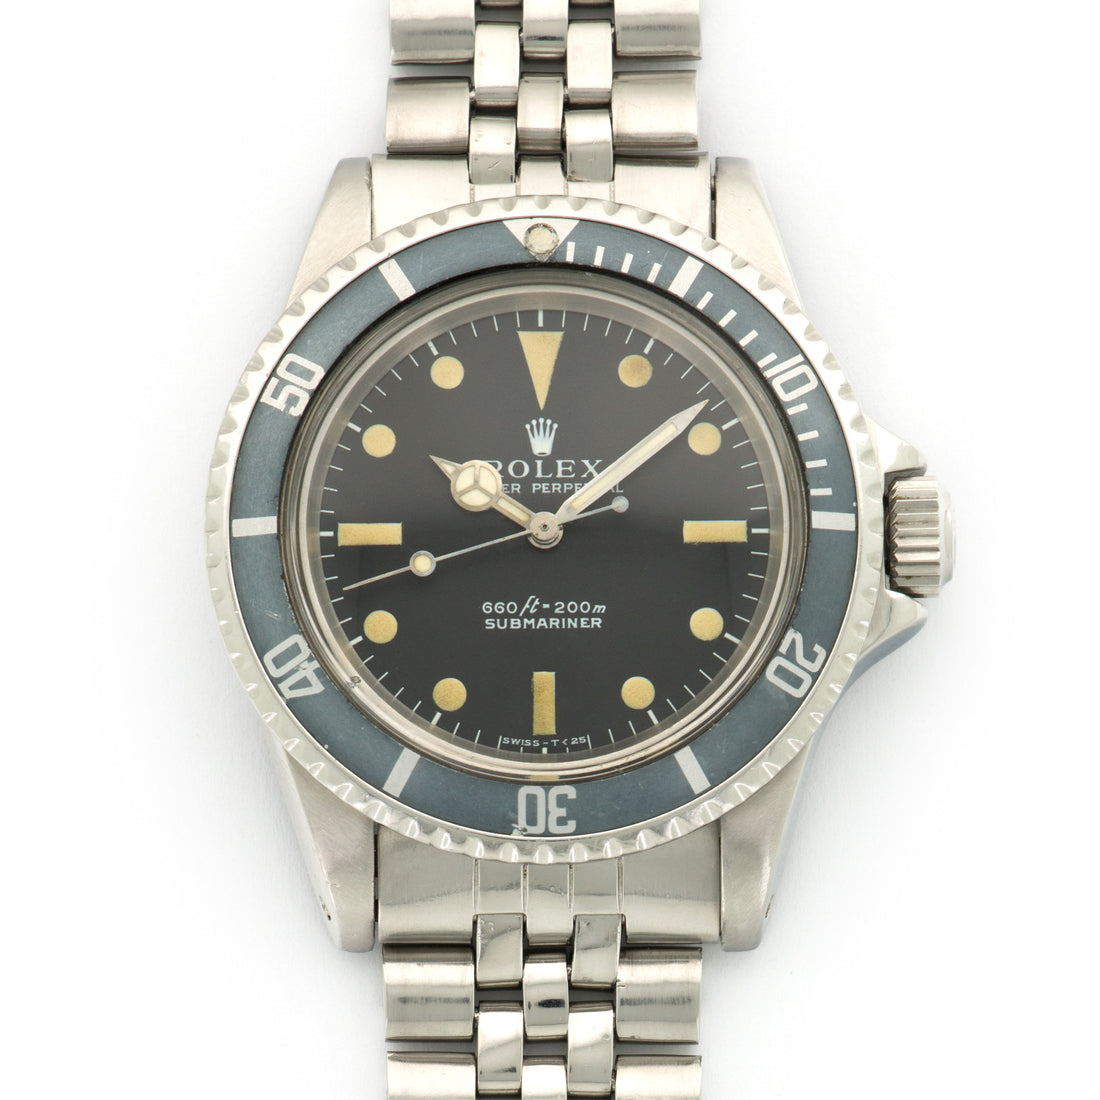 Rolex Submariner Watch Ref. 5513